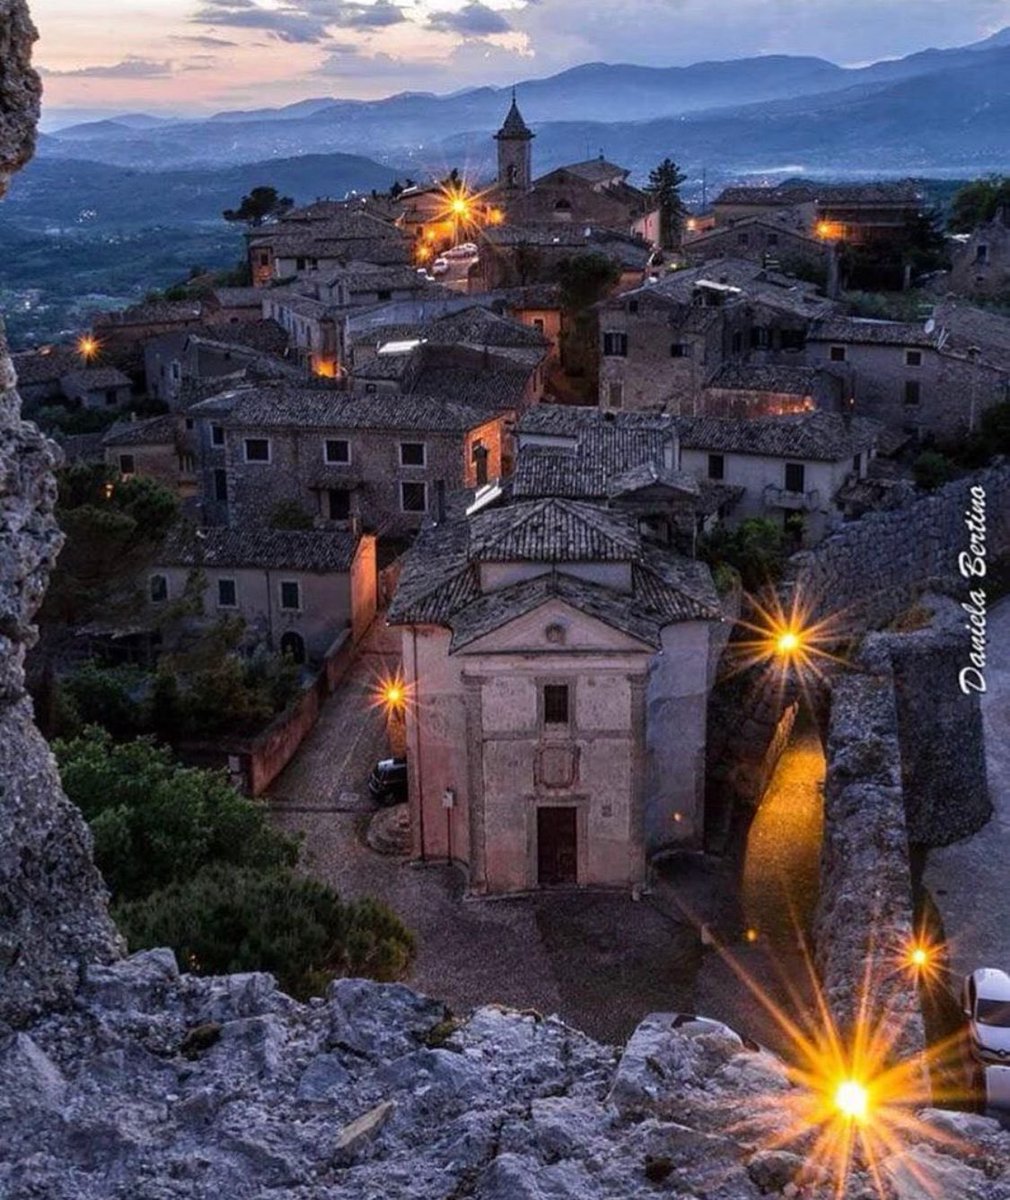 #Arpino è uno dei paesi più antichi della provincia di: #Frosinone: la bellezza dell' #Acropoli di Civitavecchia, la porta ogivale con arco a sesto acuto, le mura poligonali e la torre di Cicerone vi aspettano!

📷 Ig dani.bertino

#VisitLazio #LazioIsMe #LazioEternaScoperta